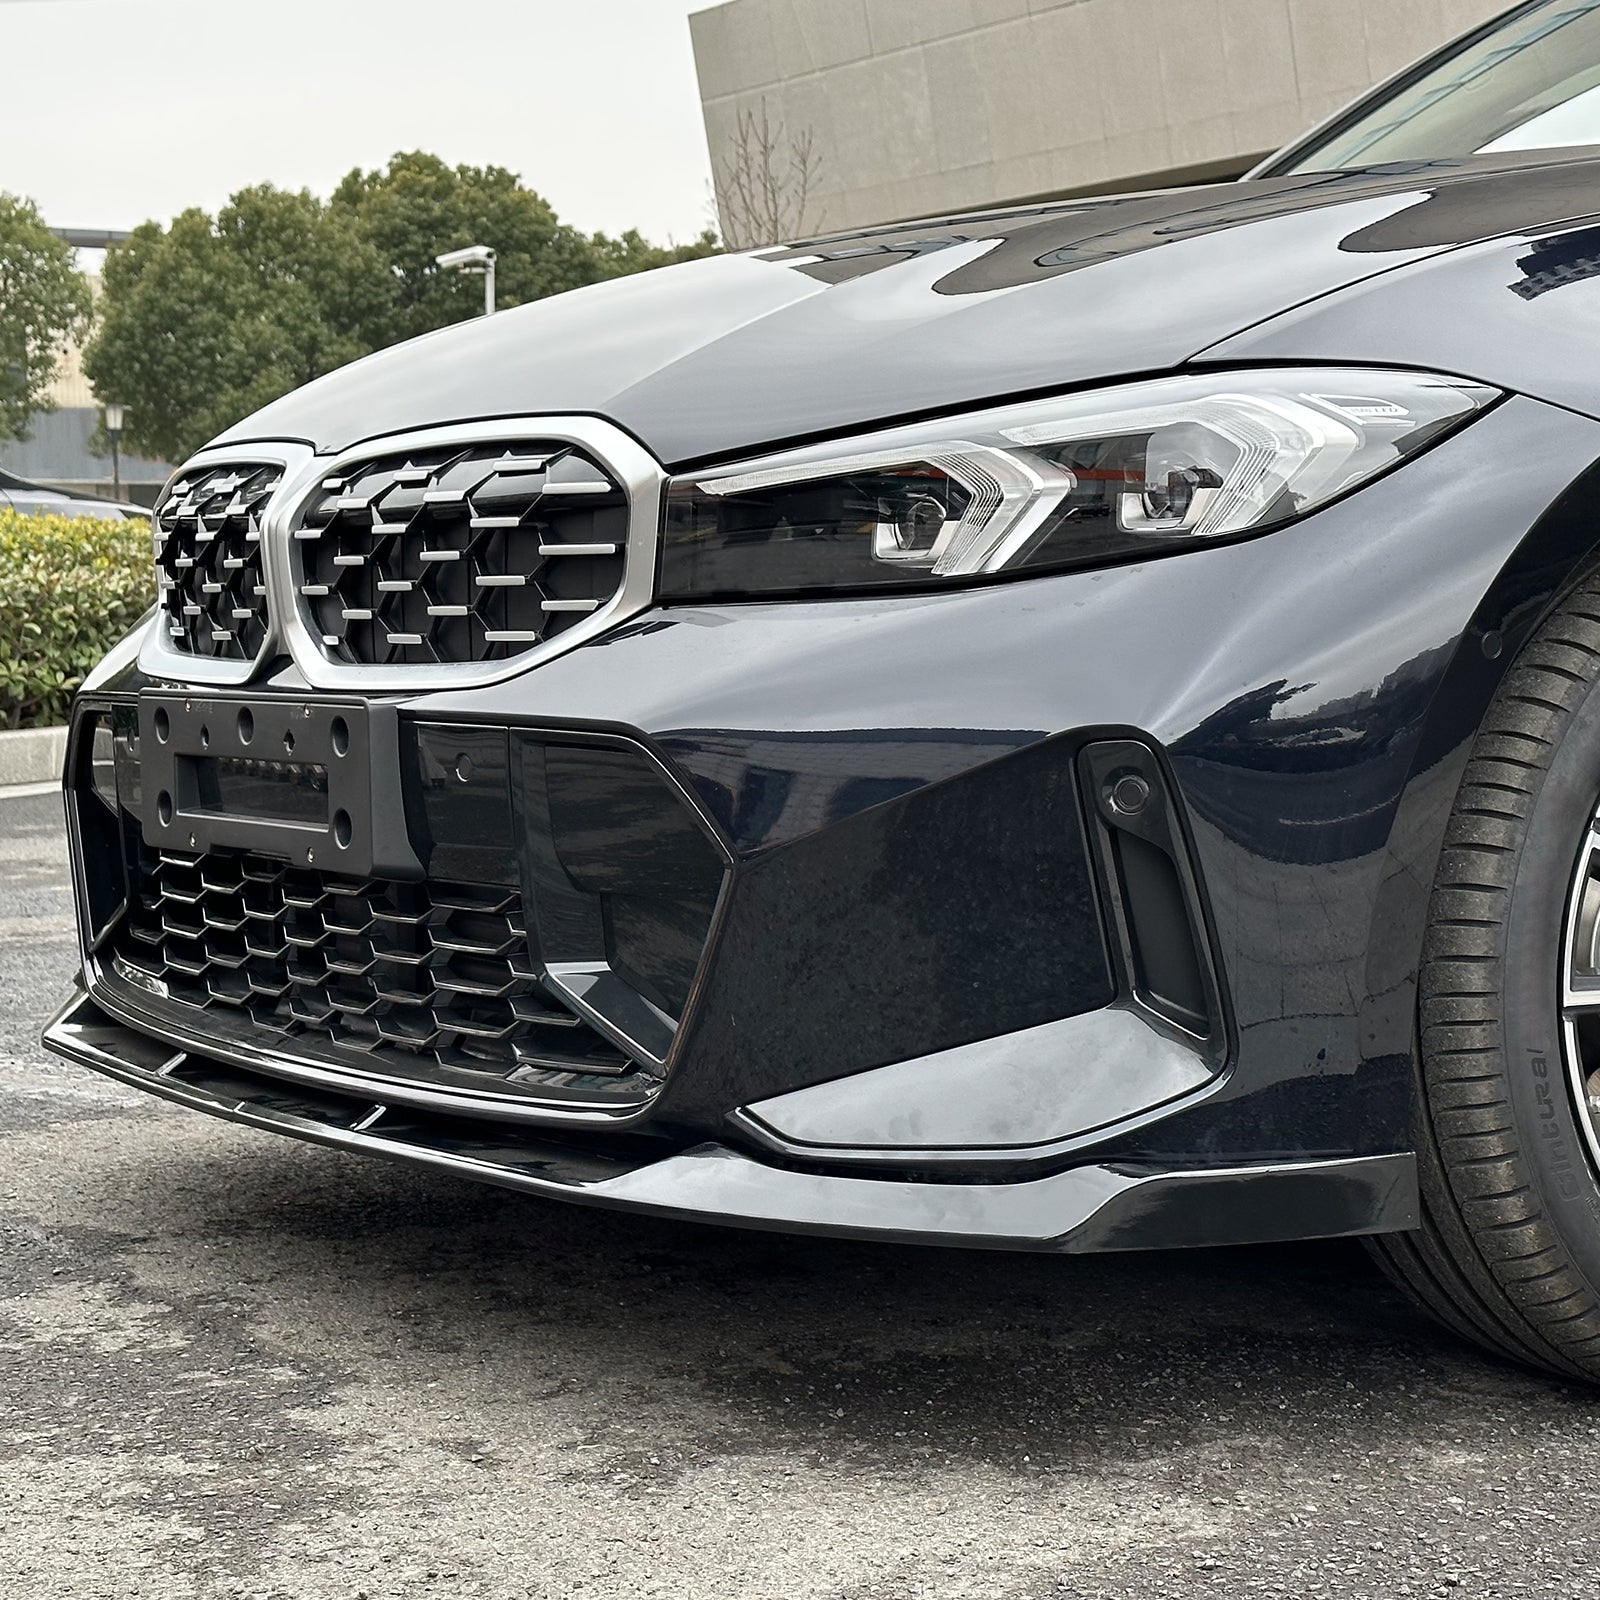 BMW – tagged “M340i” – Ikon Motorsports